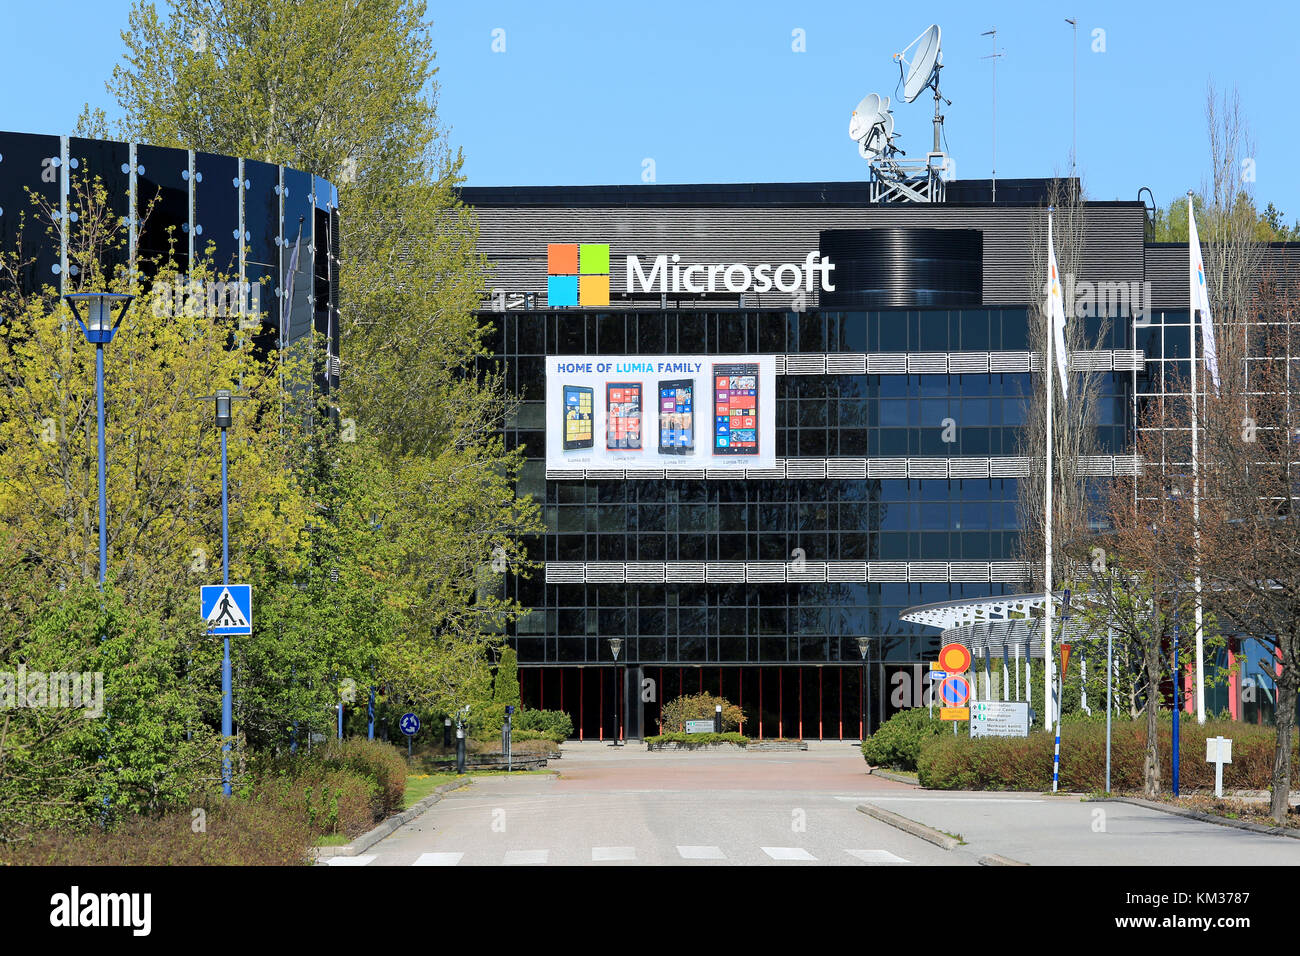 SALO, Finnland - 17. MAI 2014: Microsoft Zeichen ersetzen Sie die Nokia Zeichen an der ehemaligen Nokia Gebäude in Salo. Ehemalige Nokia Stadt in Finnland blickt auf Mic Stockfoto